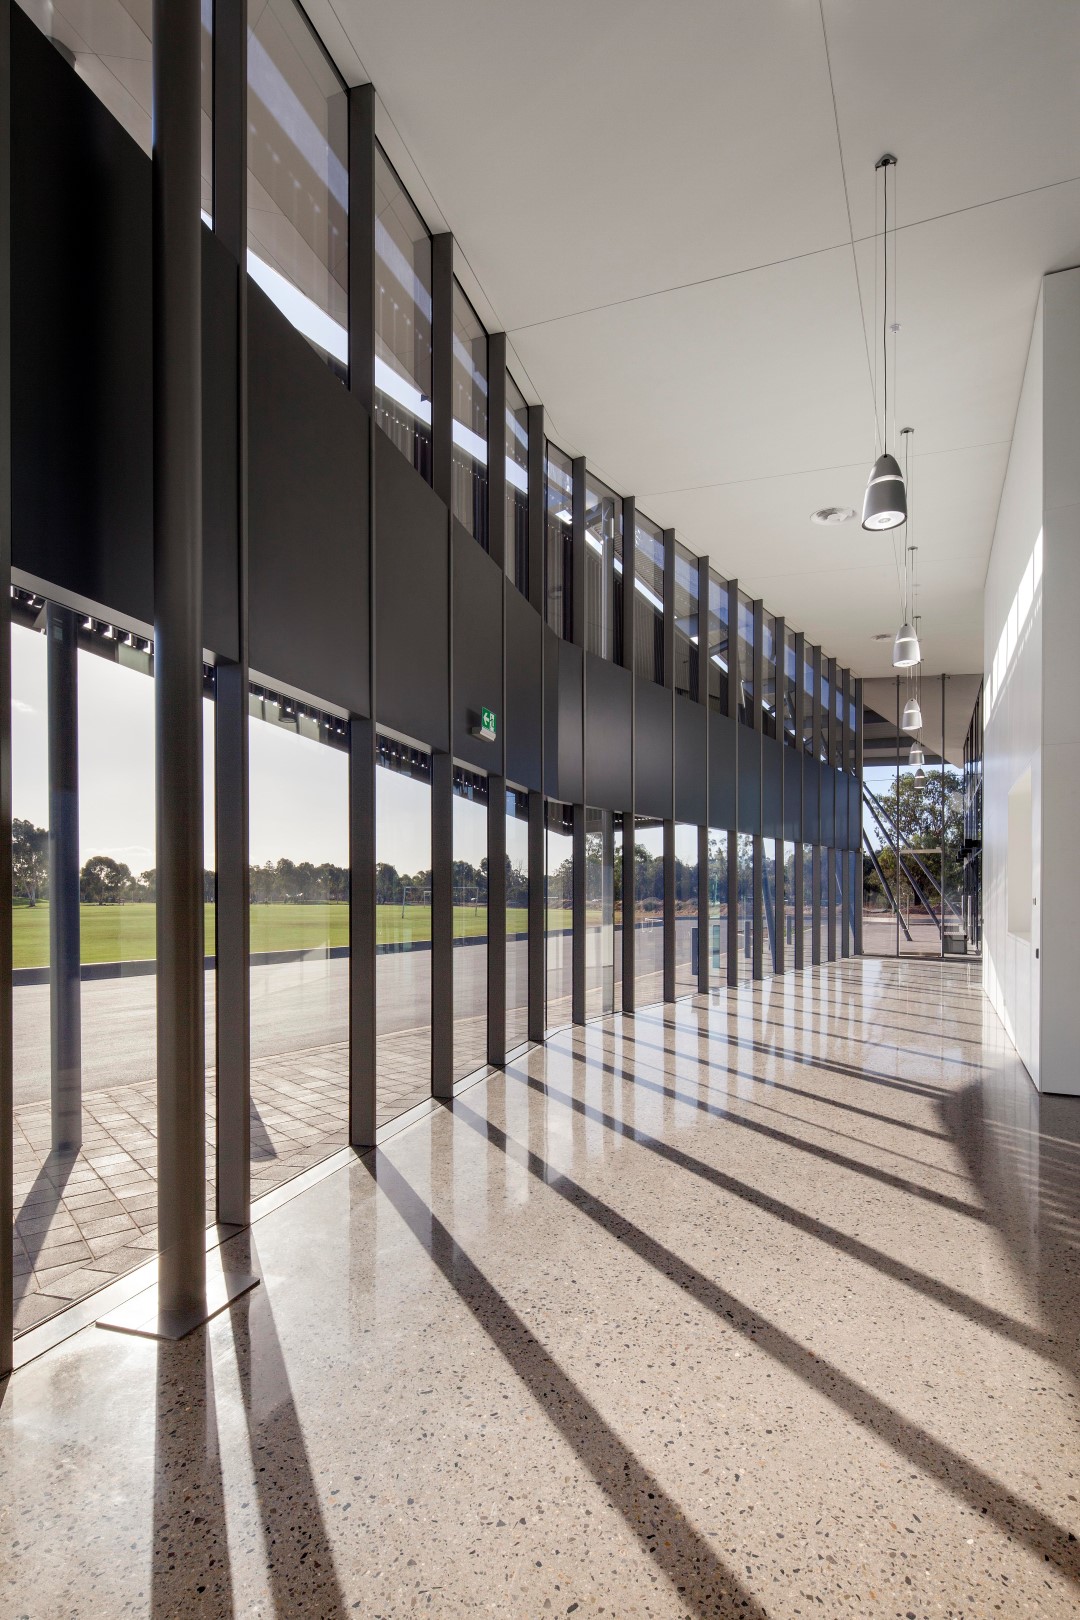 Thebarton Community Centre, interior corridor north west shadow details